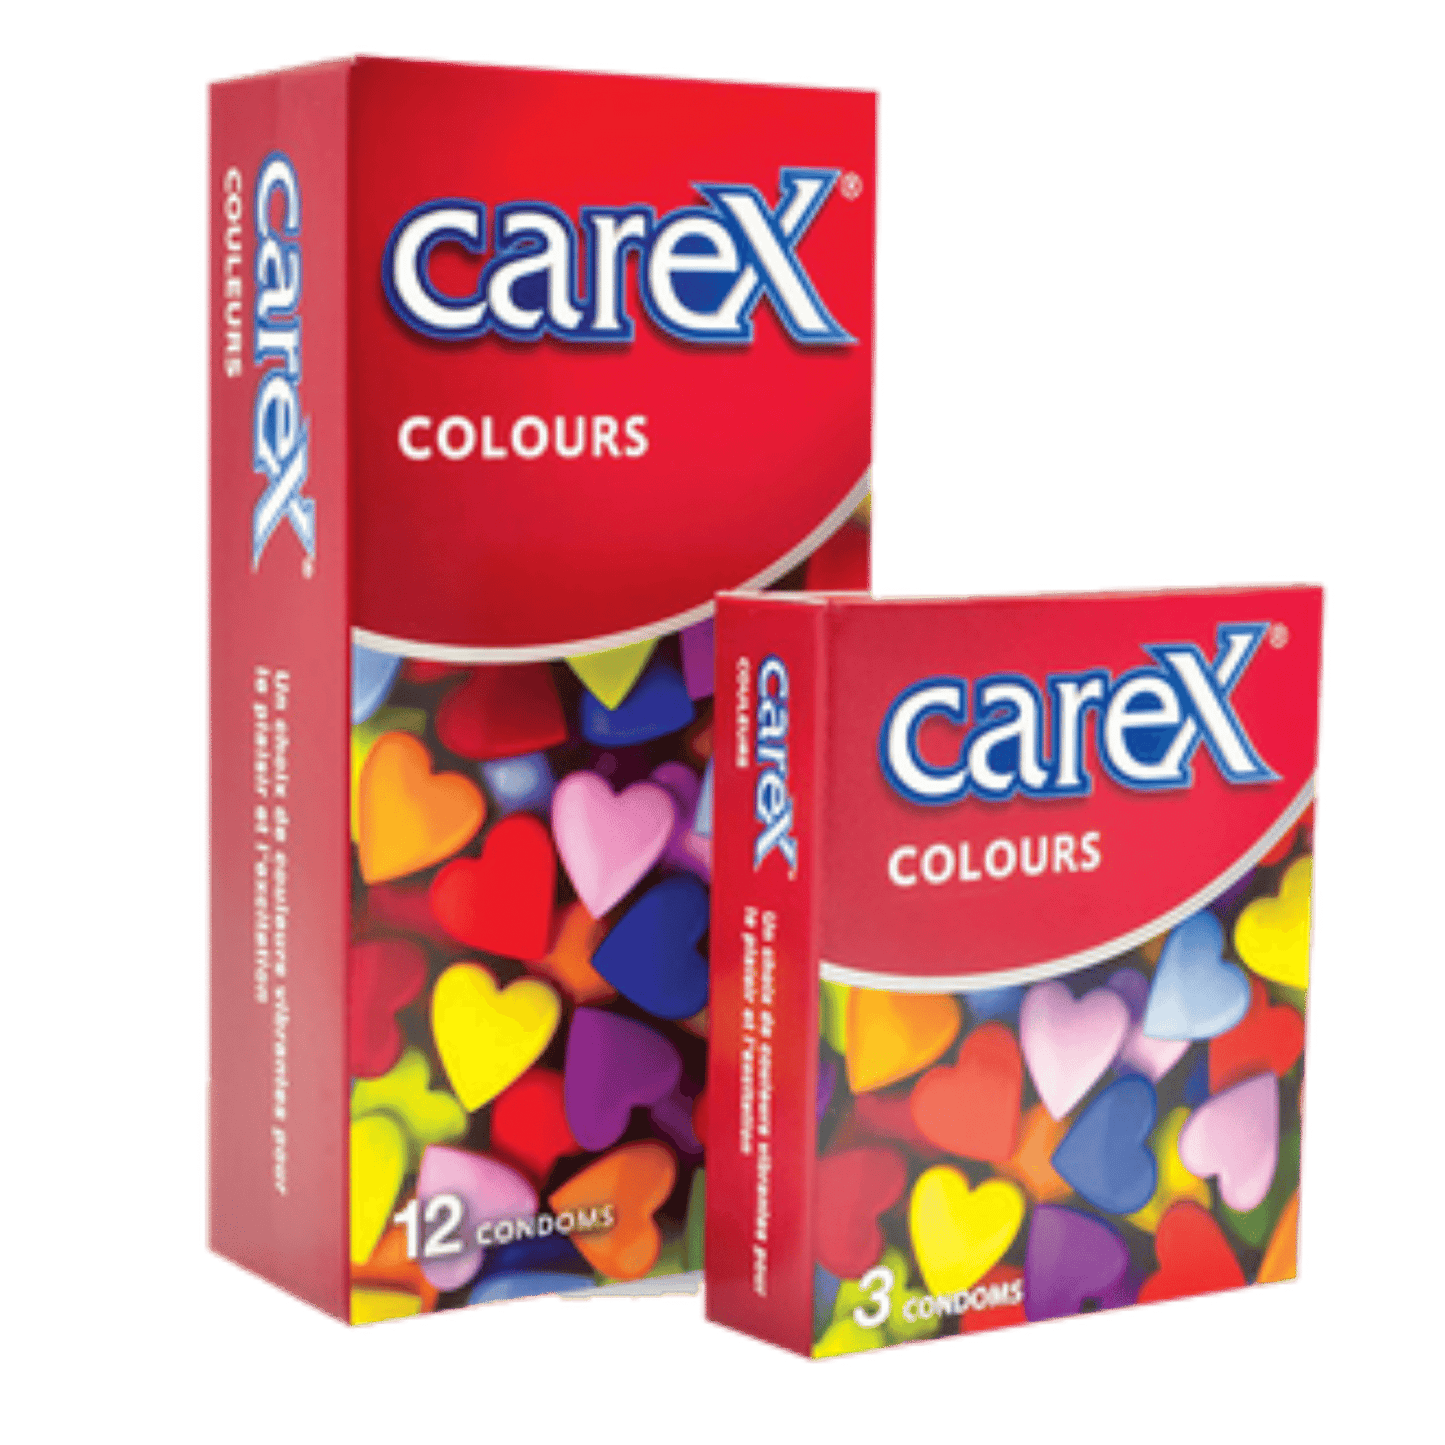 Carex Colours (12 Condoms)